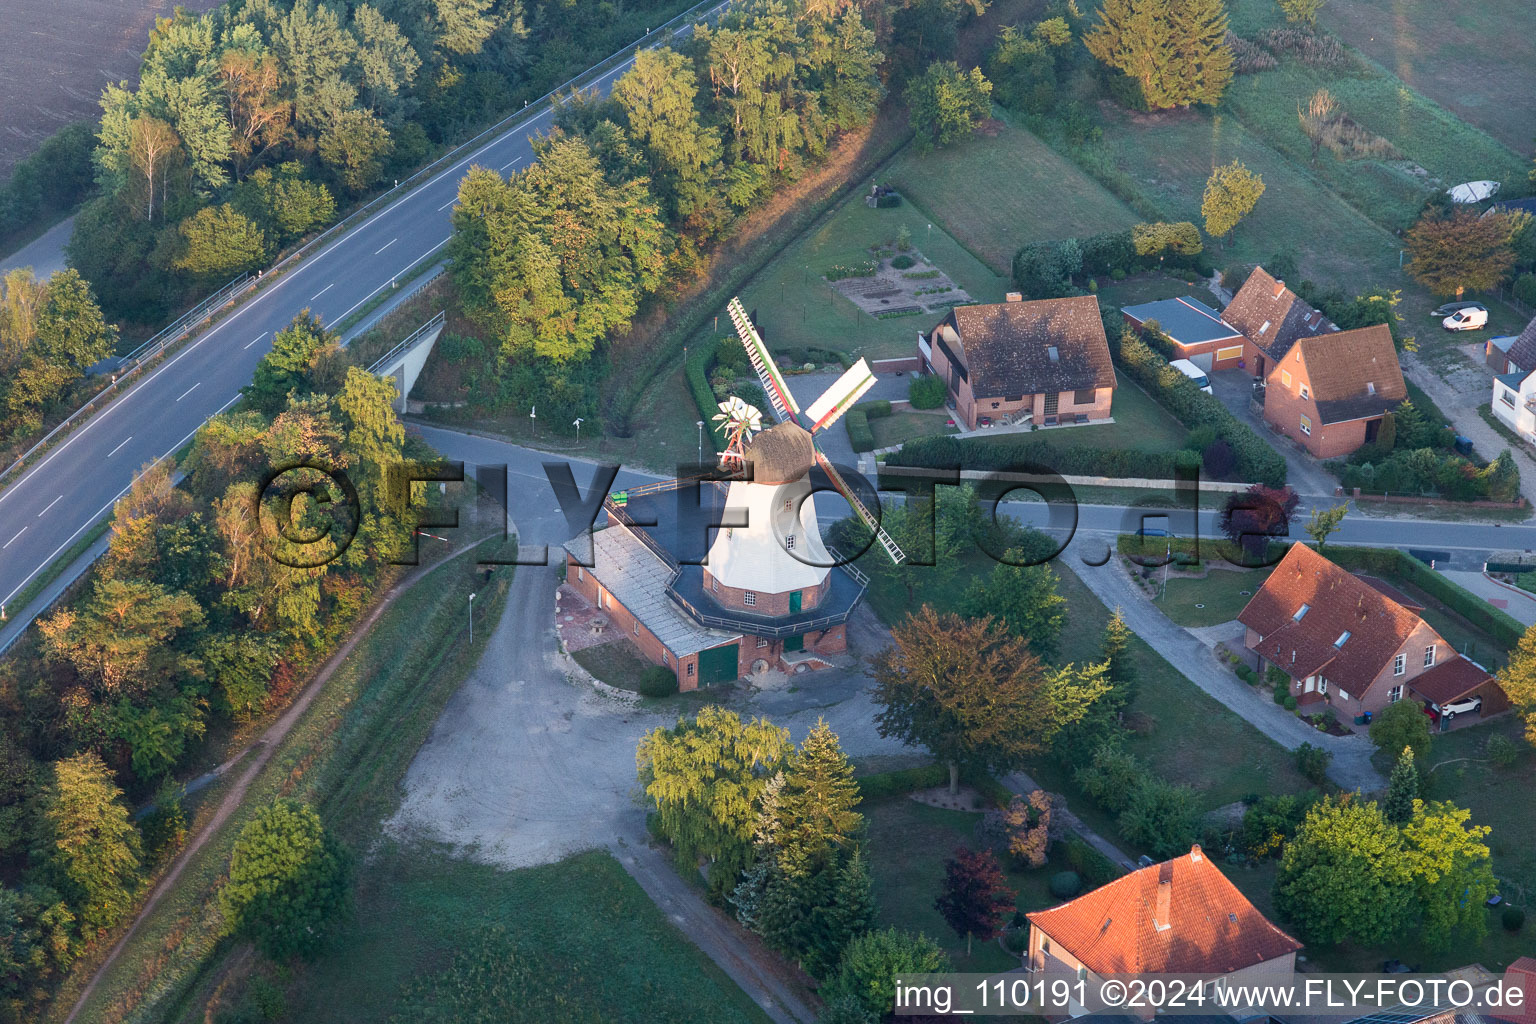 Historische Windmühle am Gehöft eines Bauernhofes am Rand von bestellten Feldern in Artlenburg im Bundesland Niedersachsen, Deutschland